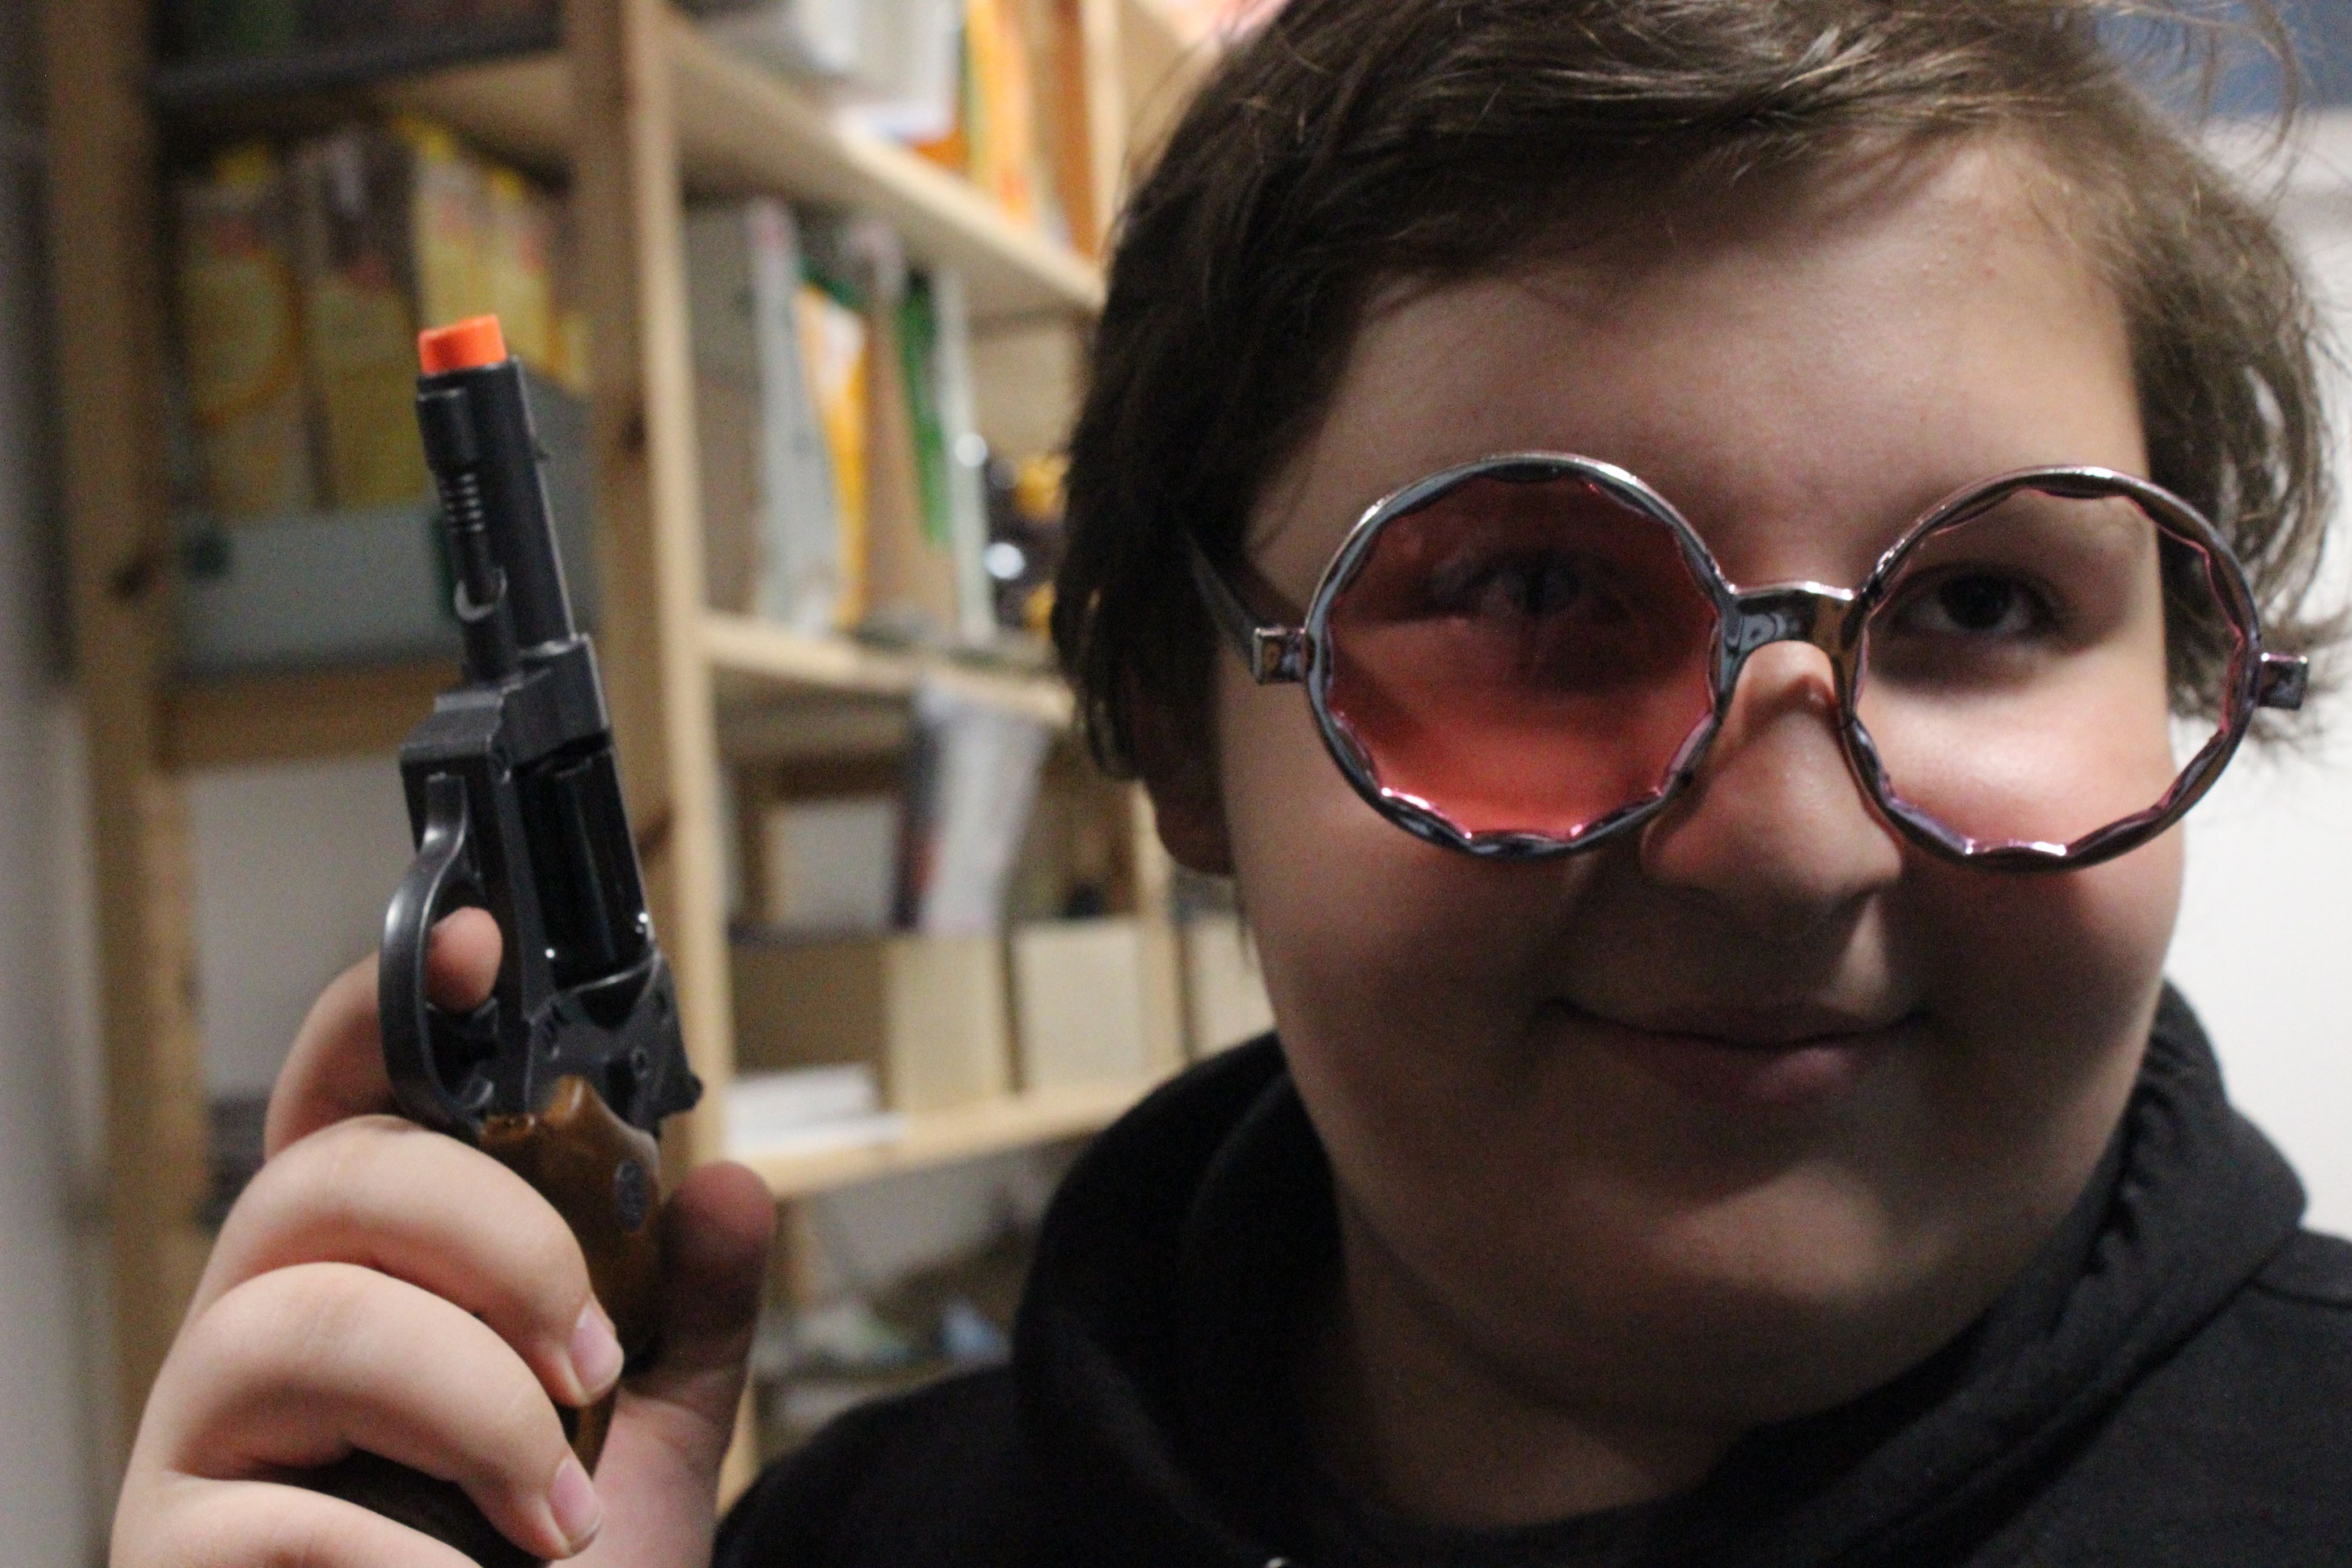 Ein Kind lächelt und hält eine Pistole in der Hand